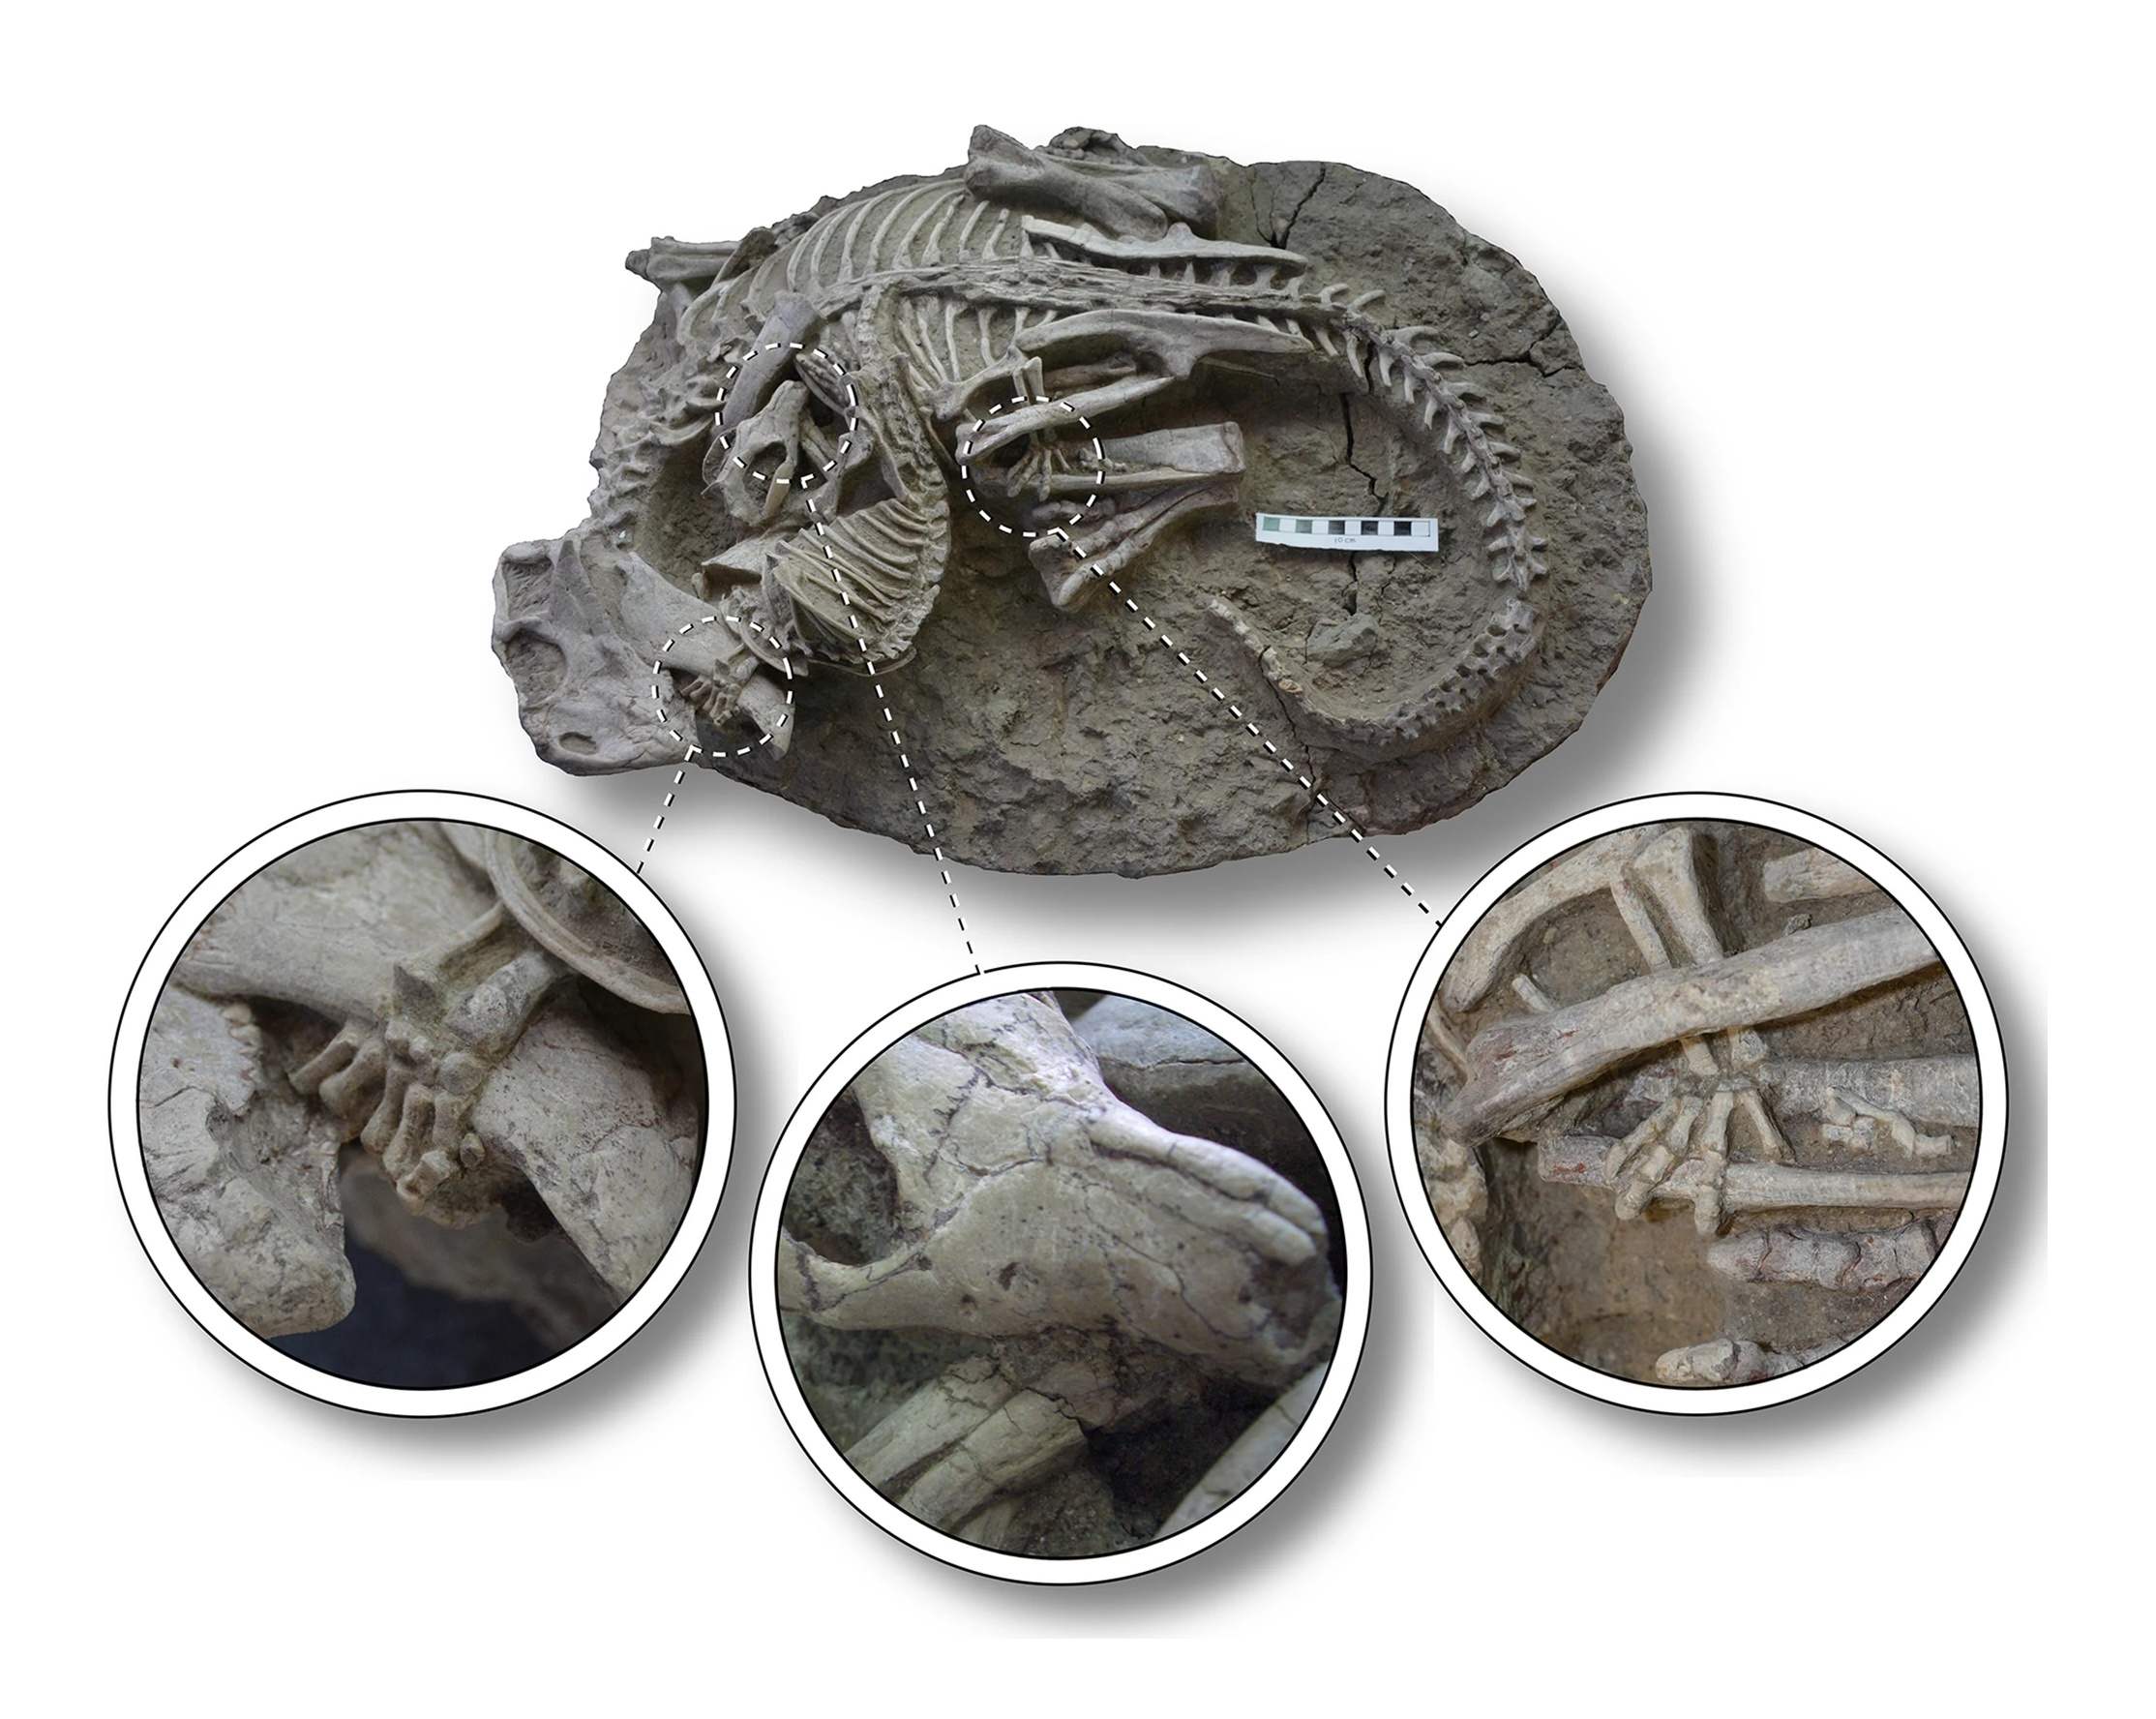 અસામાન્ય અવશેષો ડાયનાસોર 1 પર સસ્તન પ્રાણી પર હુમલો કરવાના દુર્લભ પુરાવા દર્શાવે છે